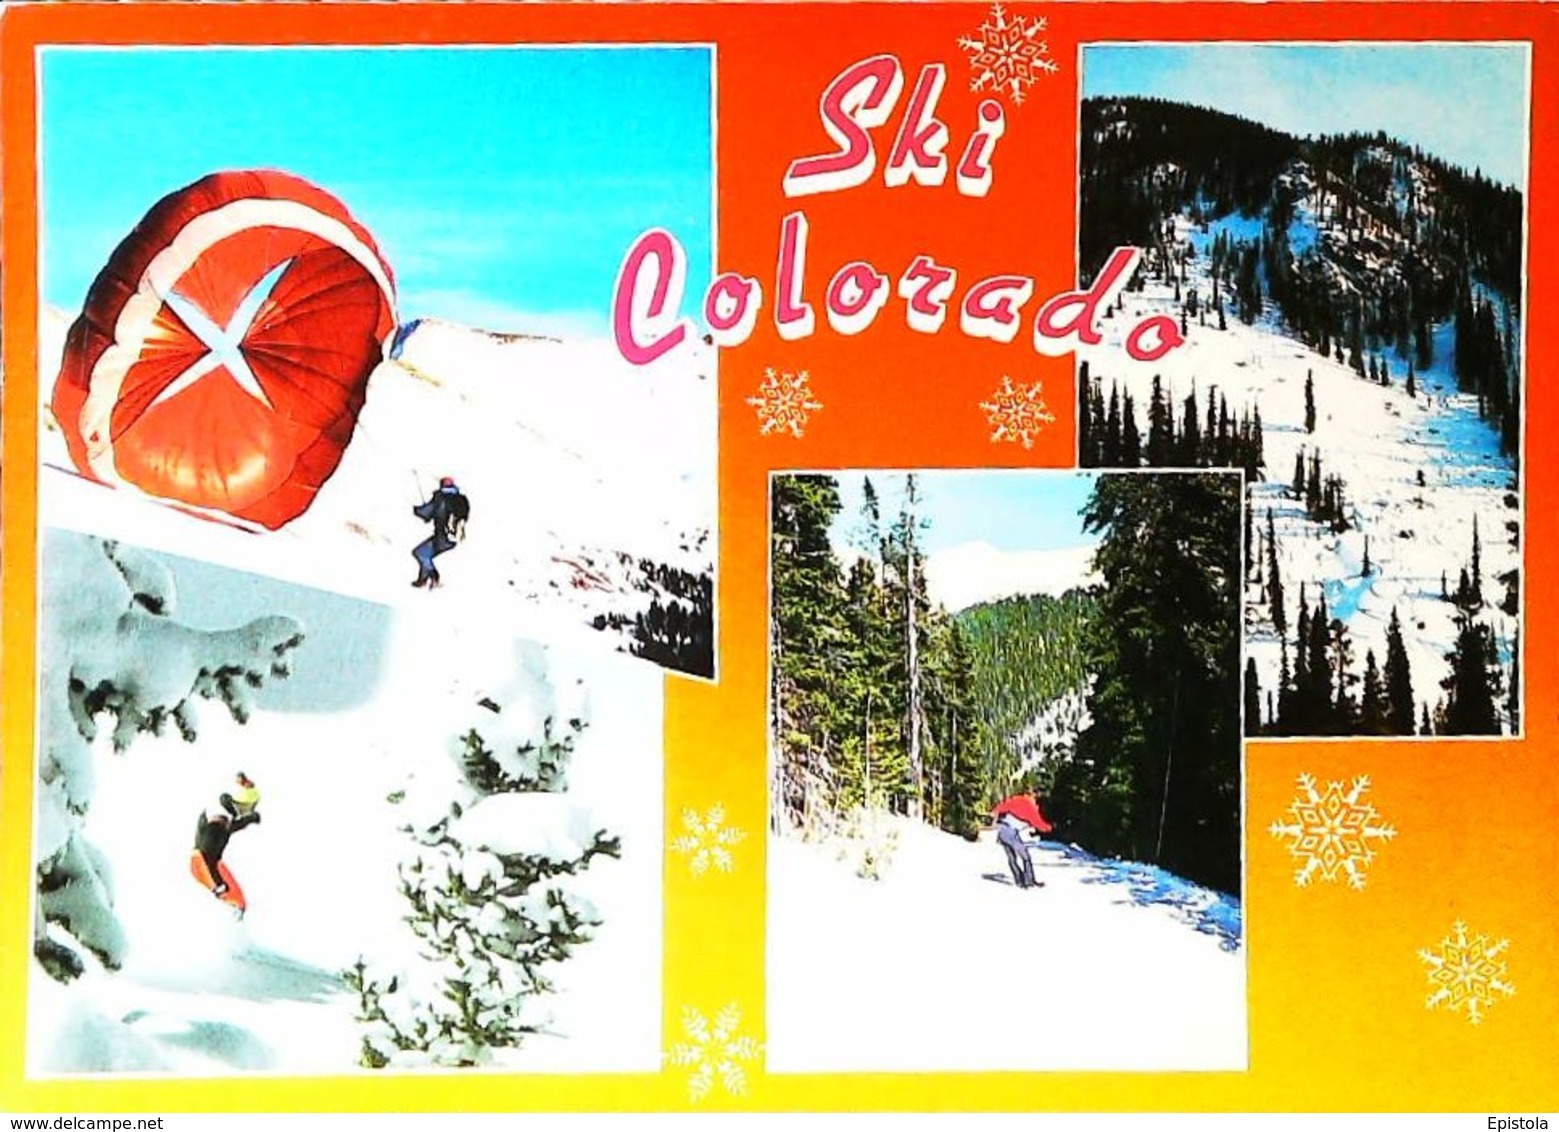 Parachutisme à Ski  "Ski Country & Parachuting" COLORADO -Edt Boulder Co. -  CPM 1980s - Fallschirmspringen